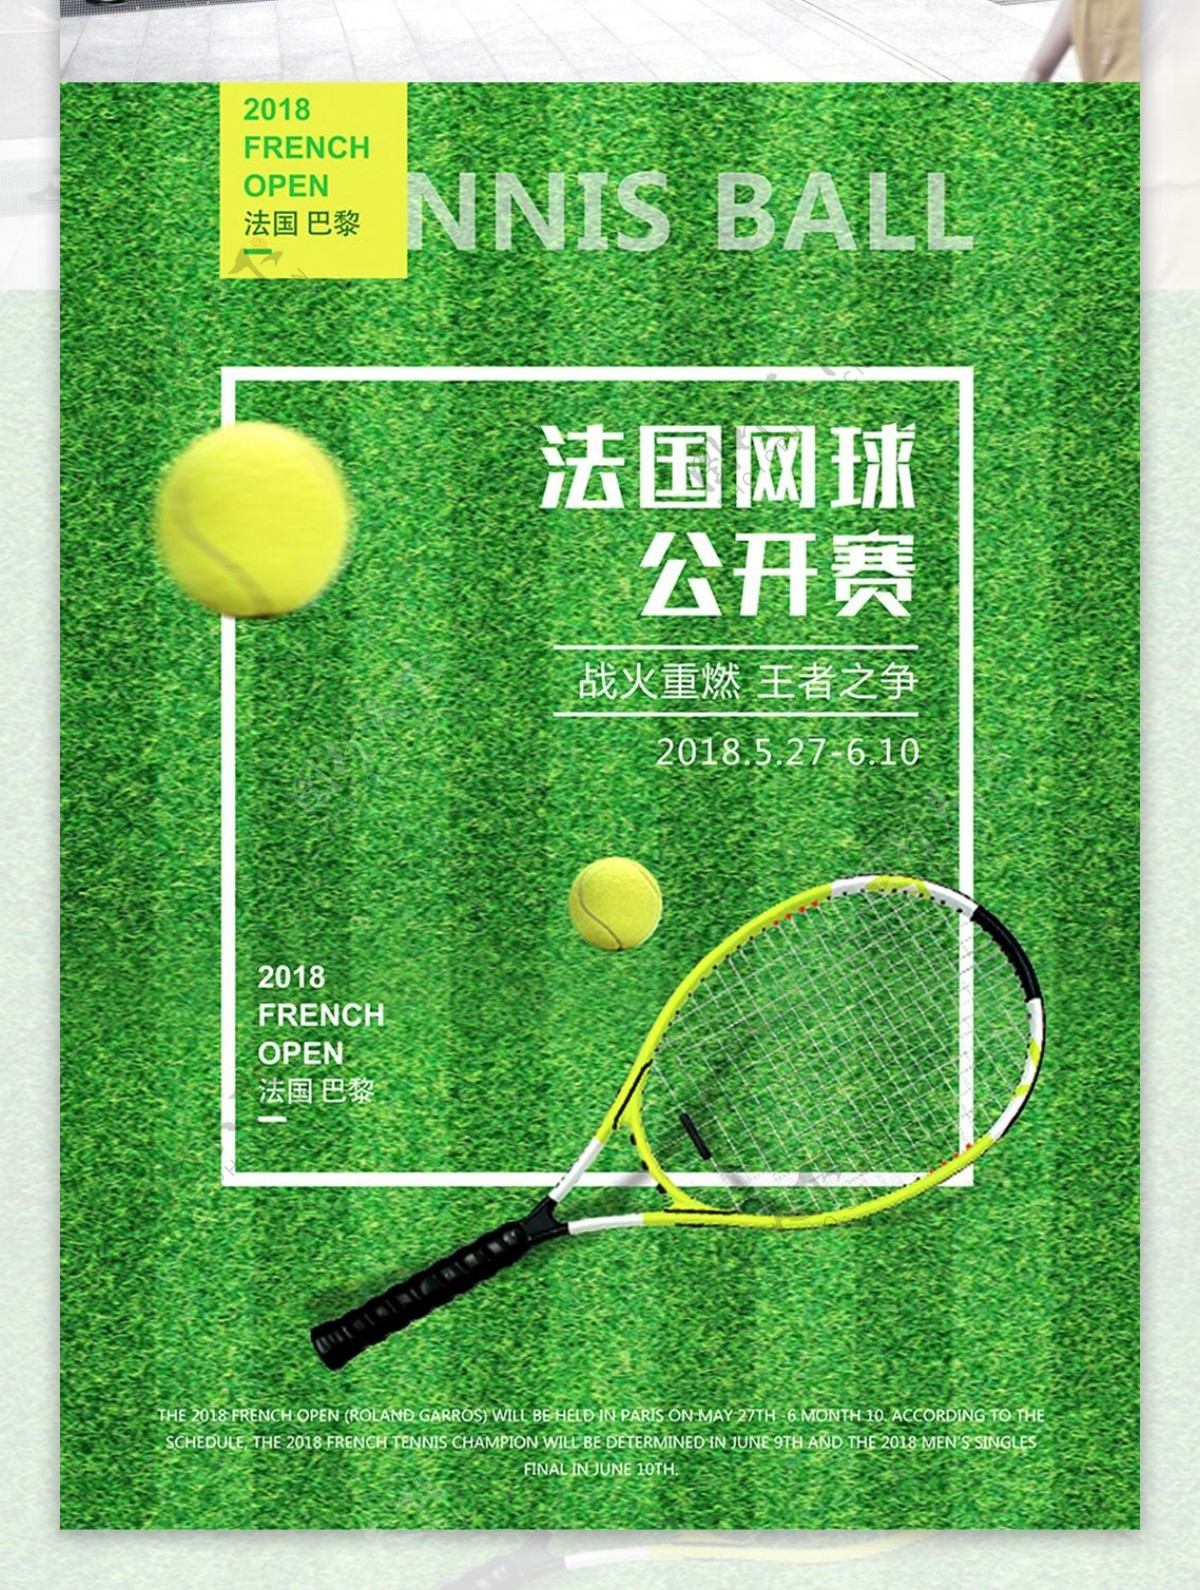 网球比赛公开赛体育海报